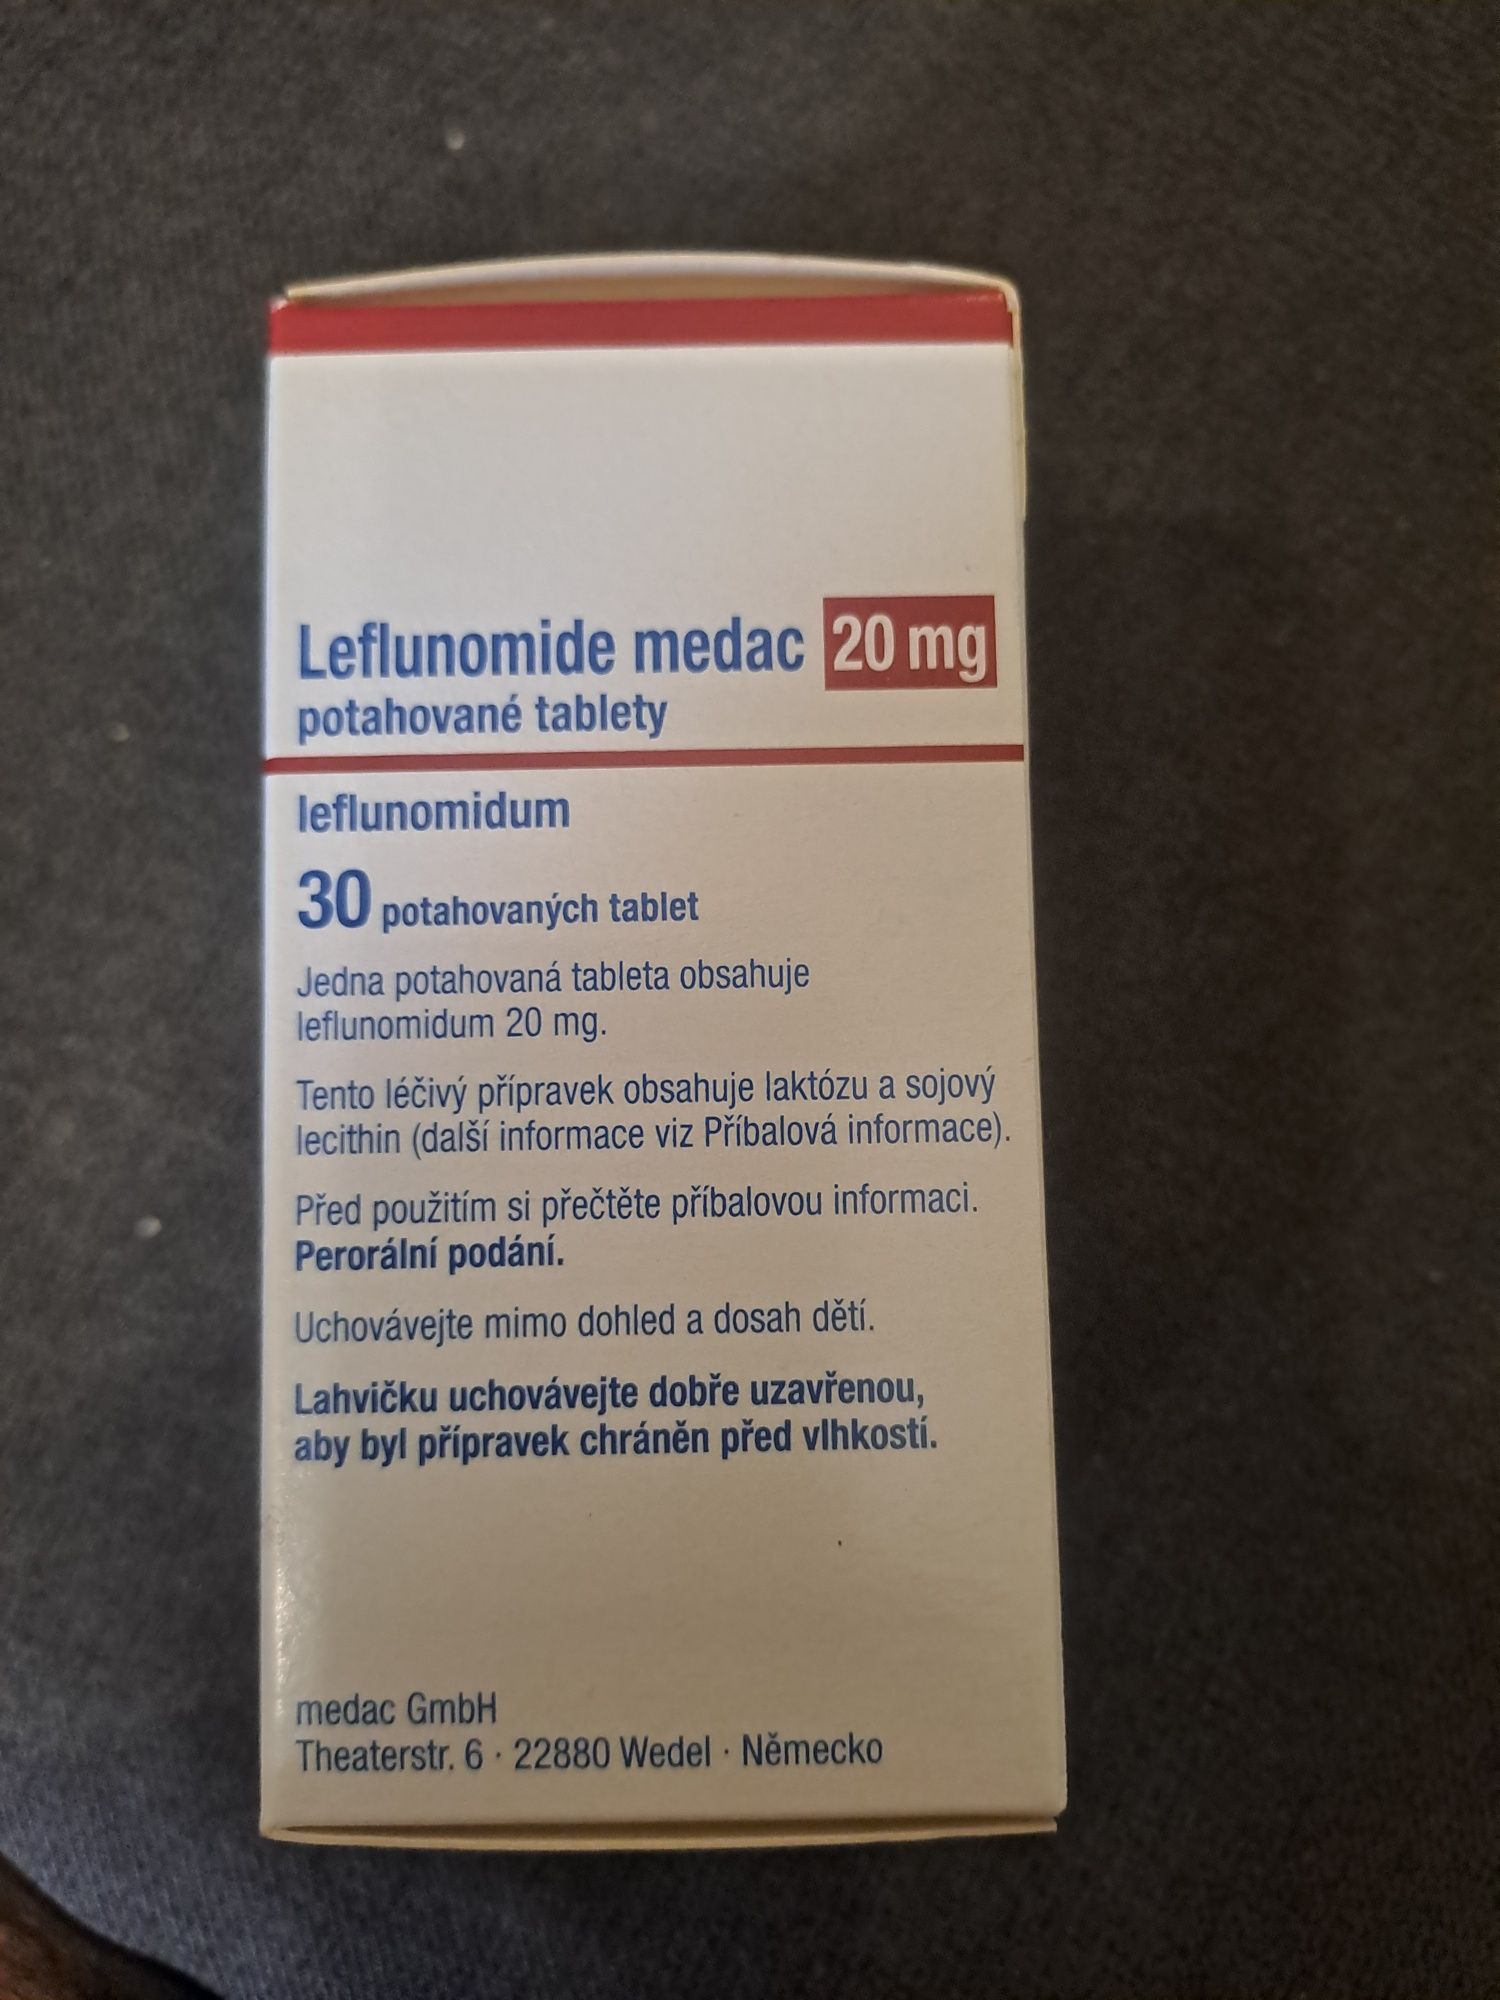 Лефлуномид медак 20 мг. 30 таблеток.